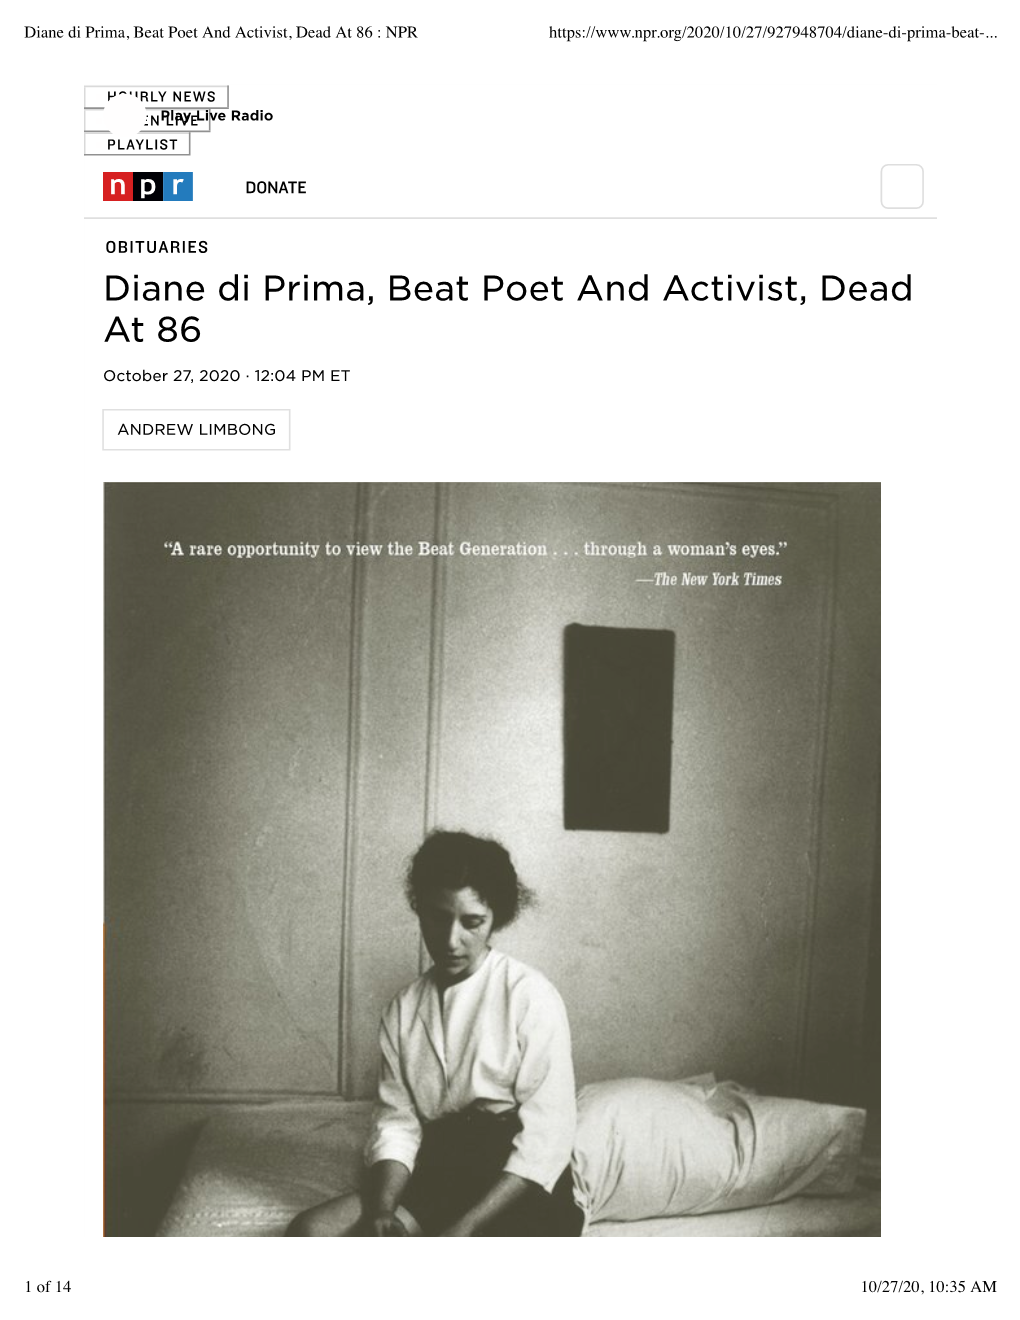 Diane Di Prima, Beat Poet and Activist, Dead at 86